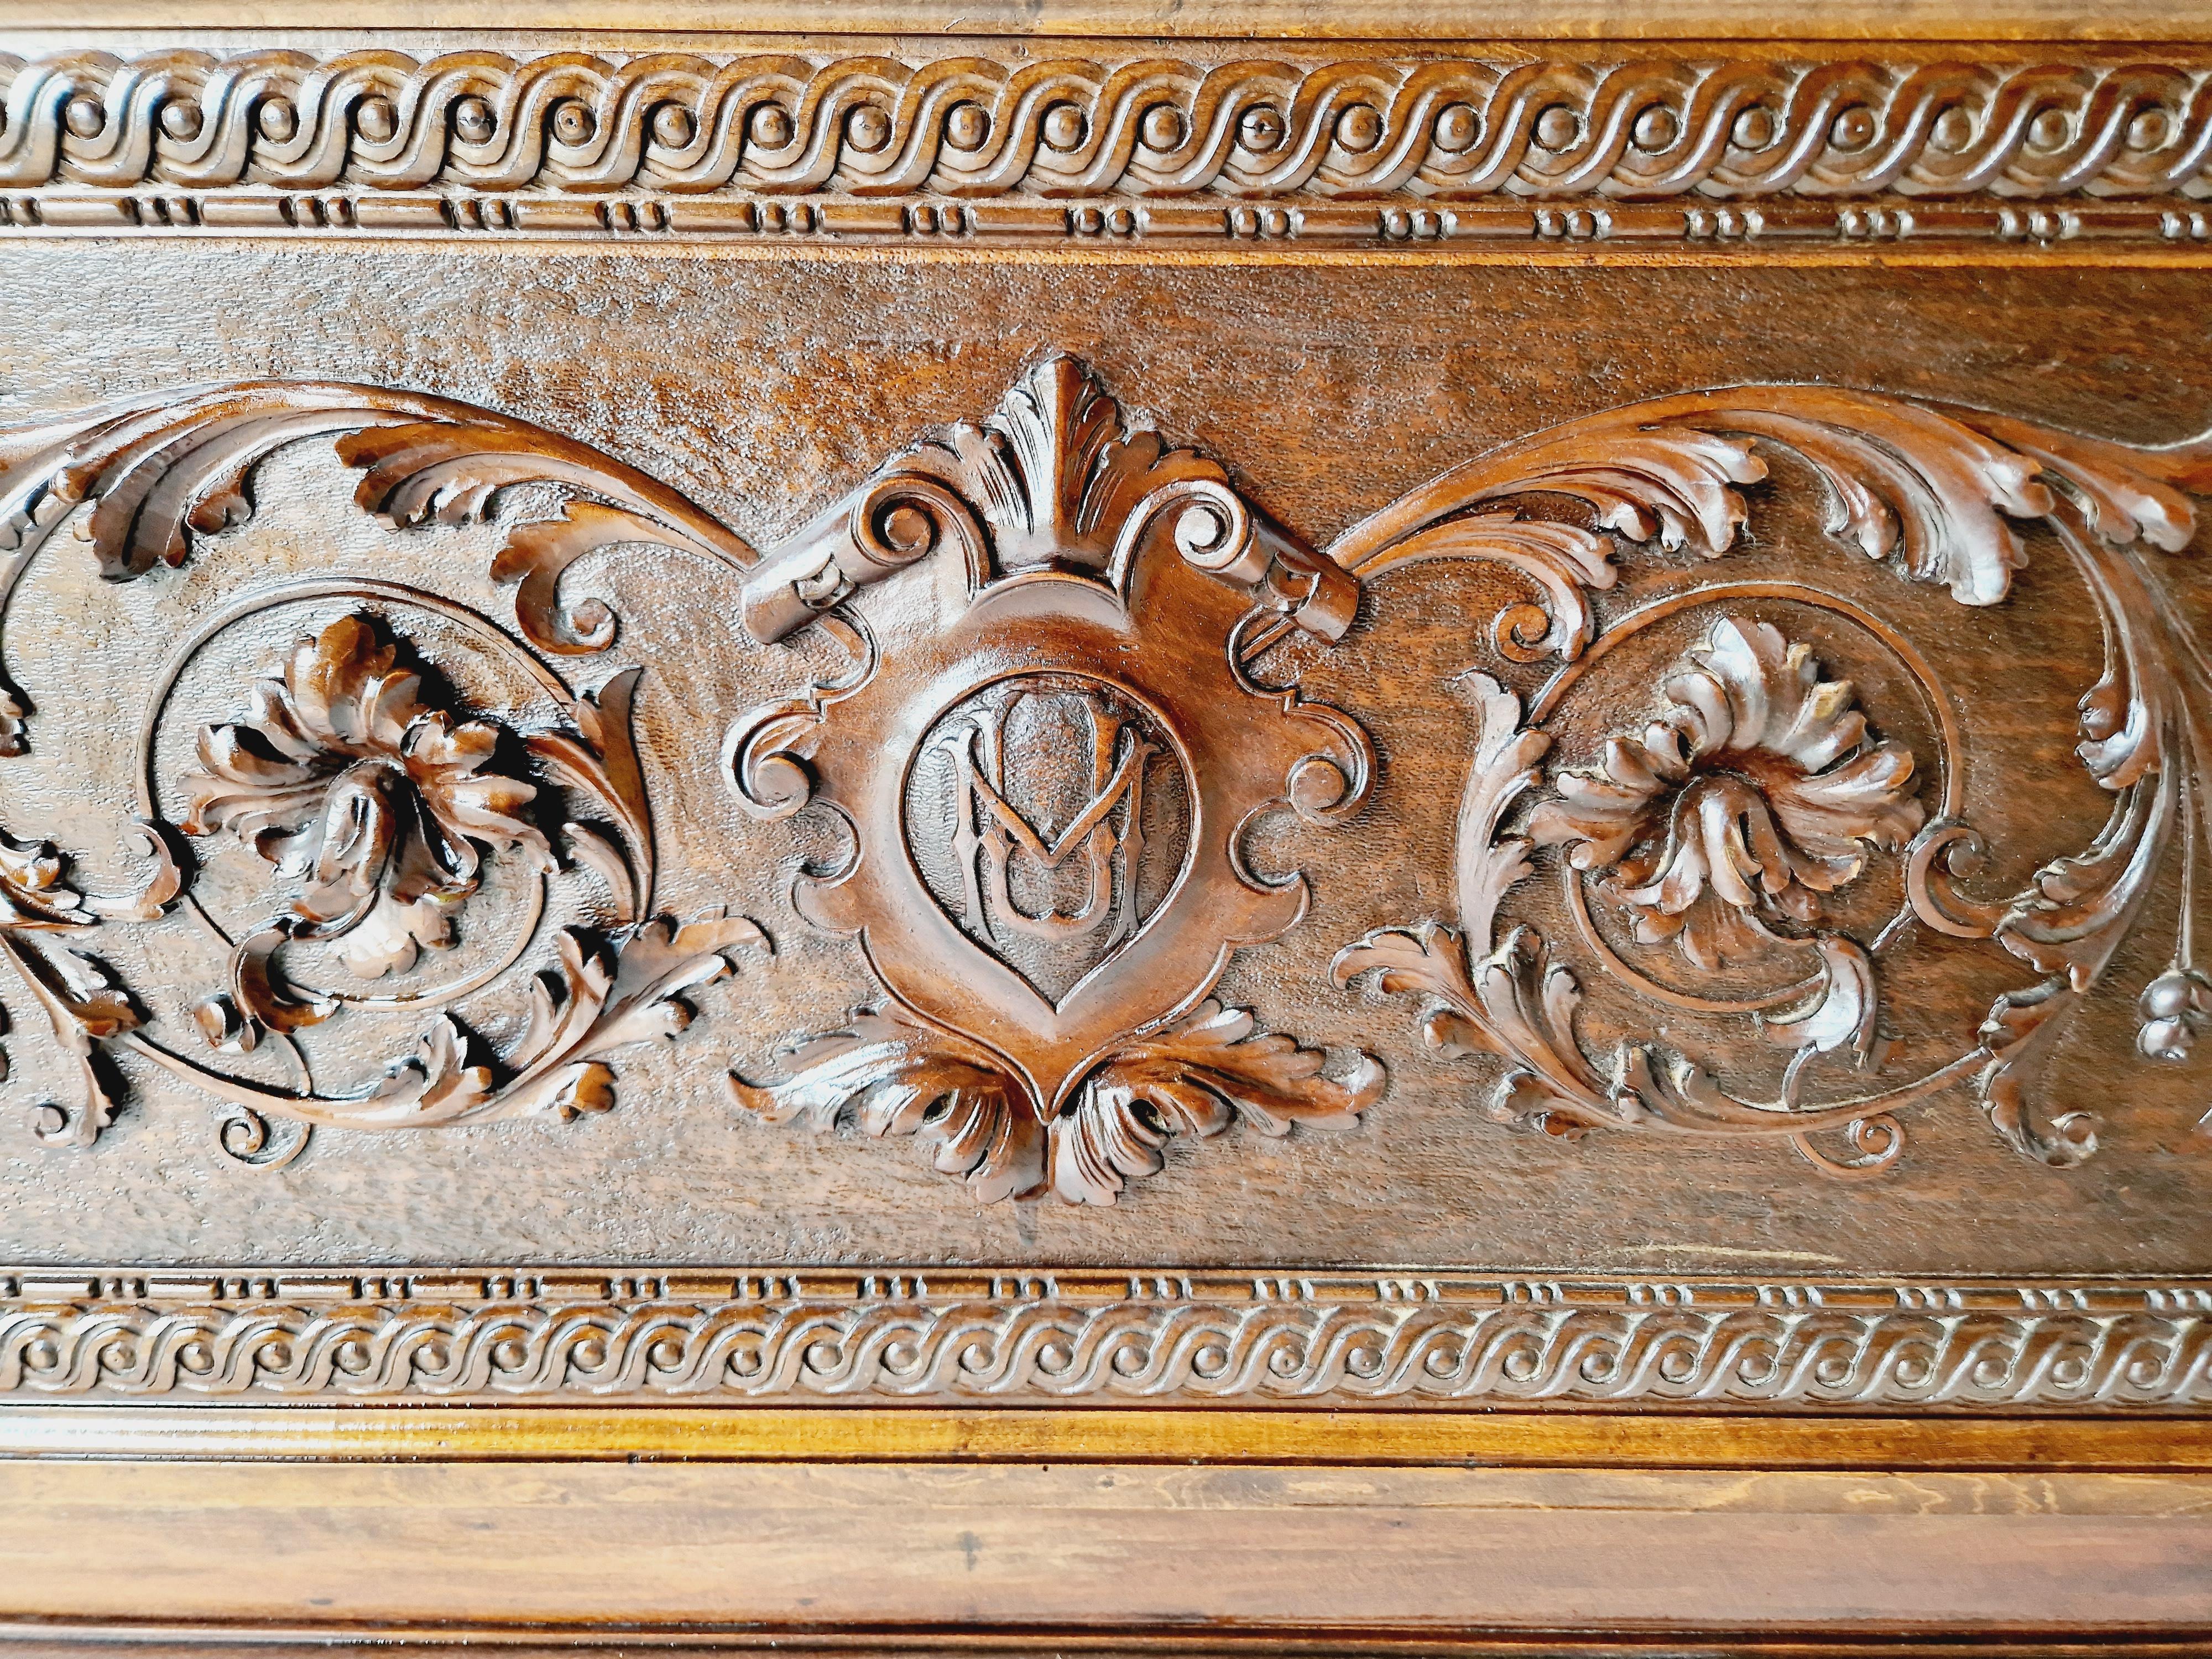 Dieses fabelhafte antike italienische Renaissance-Revival-Bett ist ein atemberaubendes Beispiel für eine italienische dekorative Antike, mit komplizierten Schnitzereien eines Vogels auf dem Kopfteil und ein Wappen mit Initialen, das auch auf dem